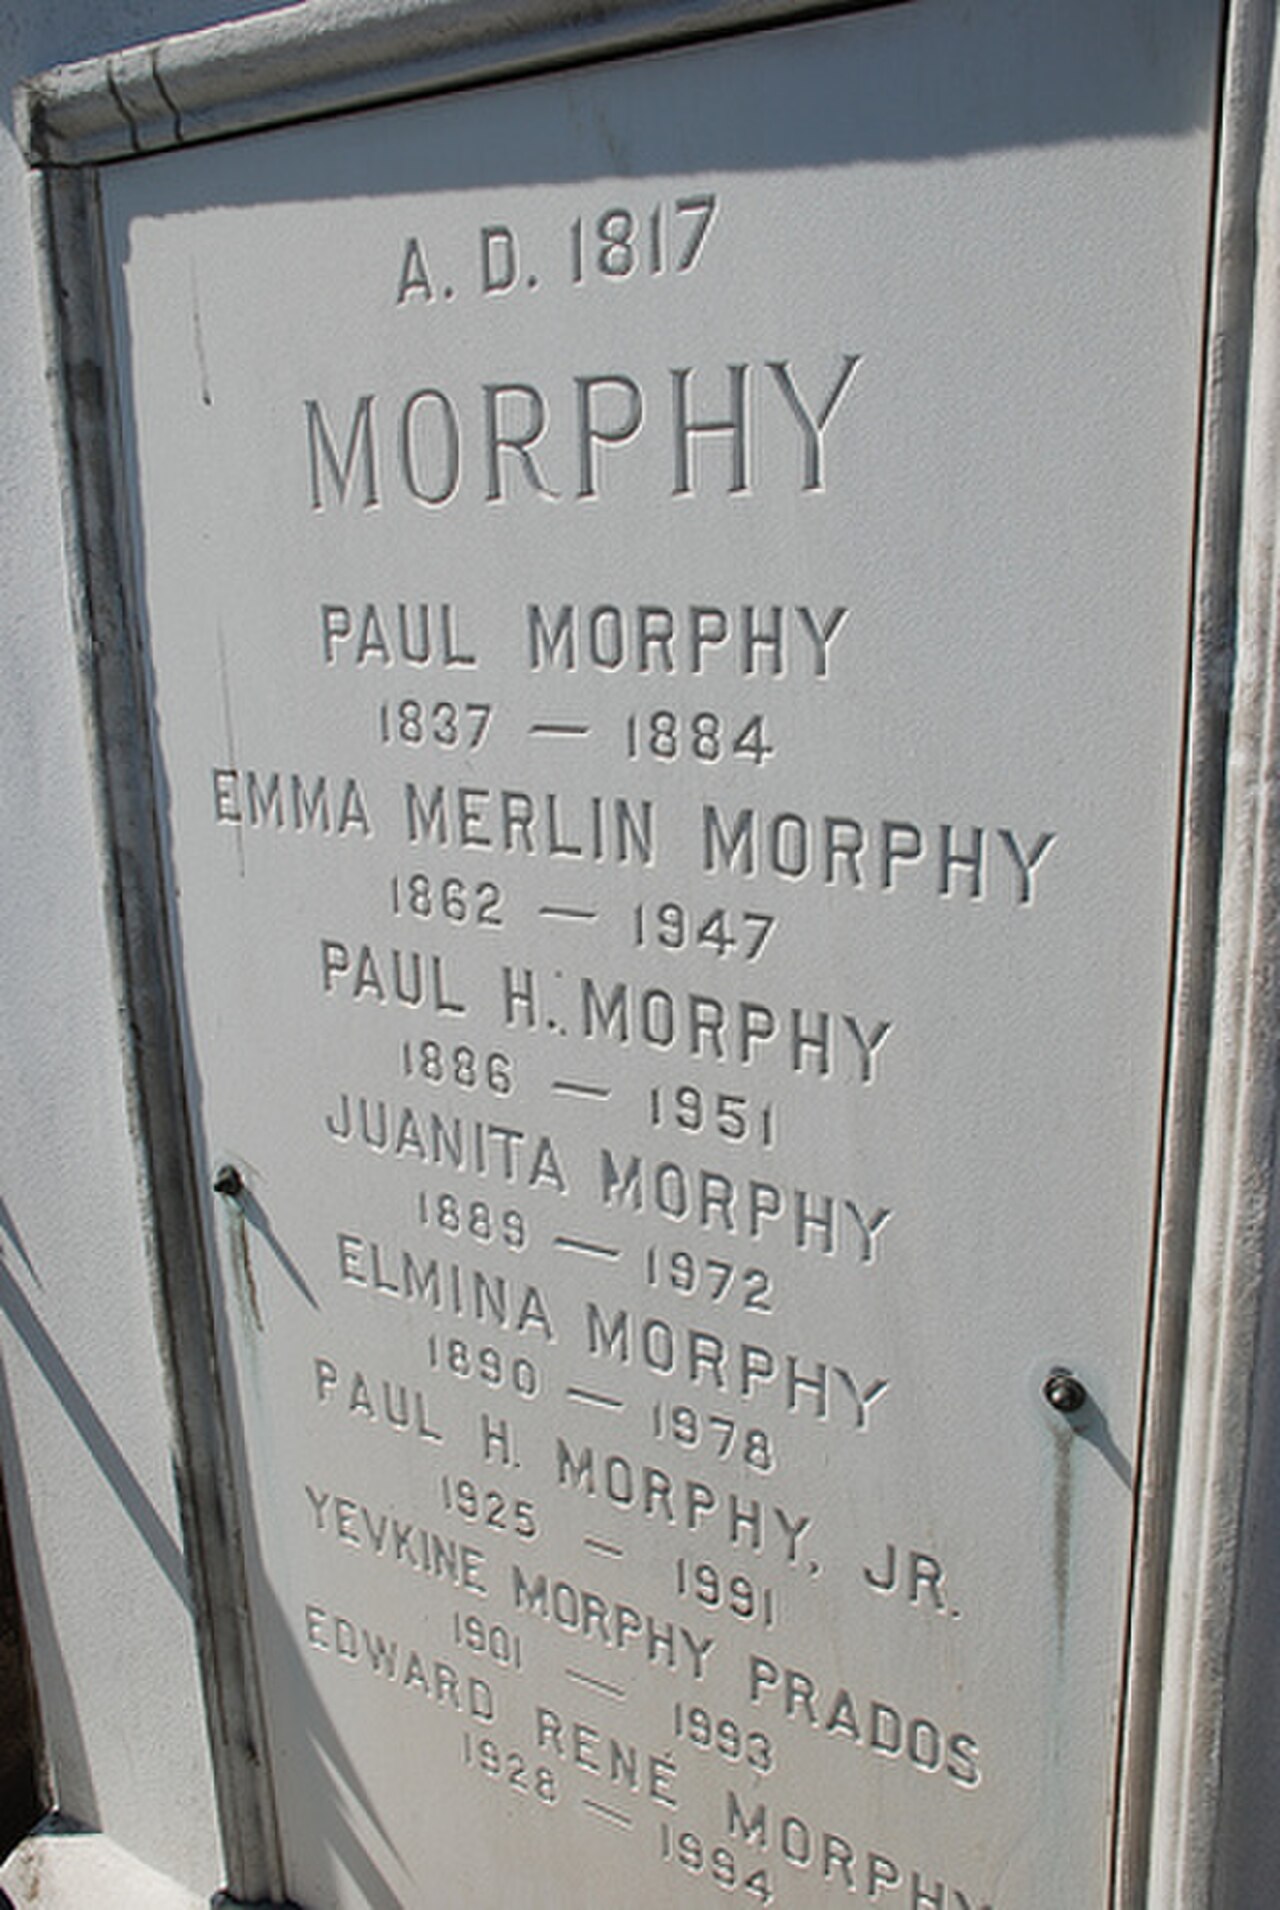 Partidas comentadas del genio norteamericano Paul Morphy